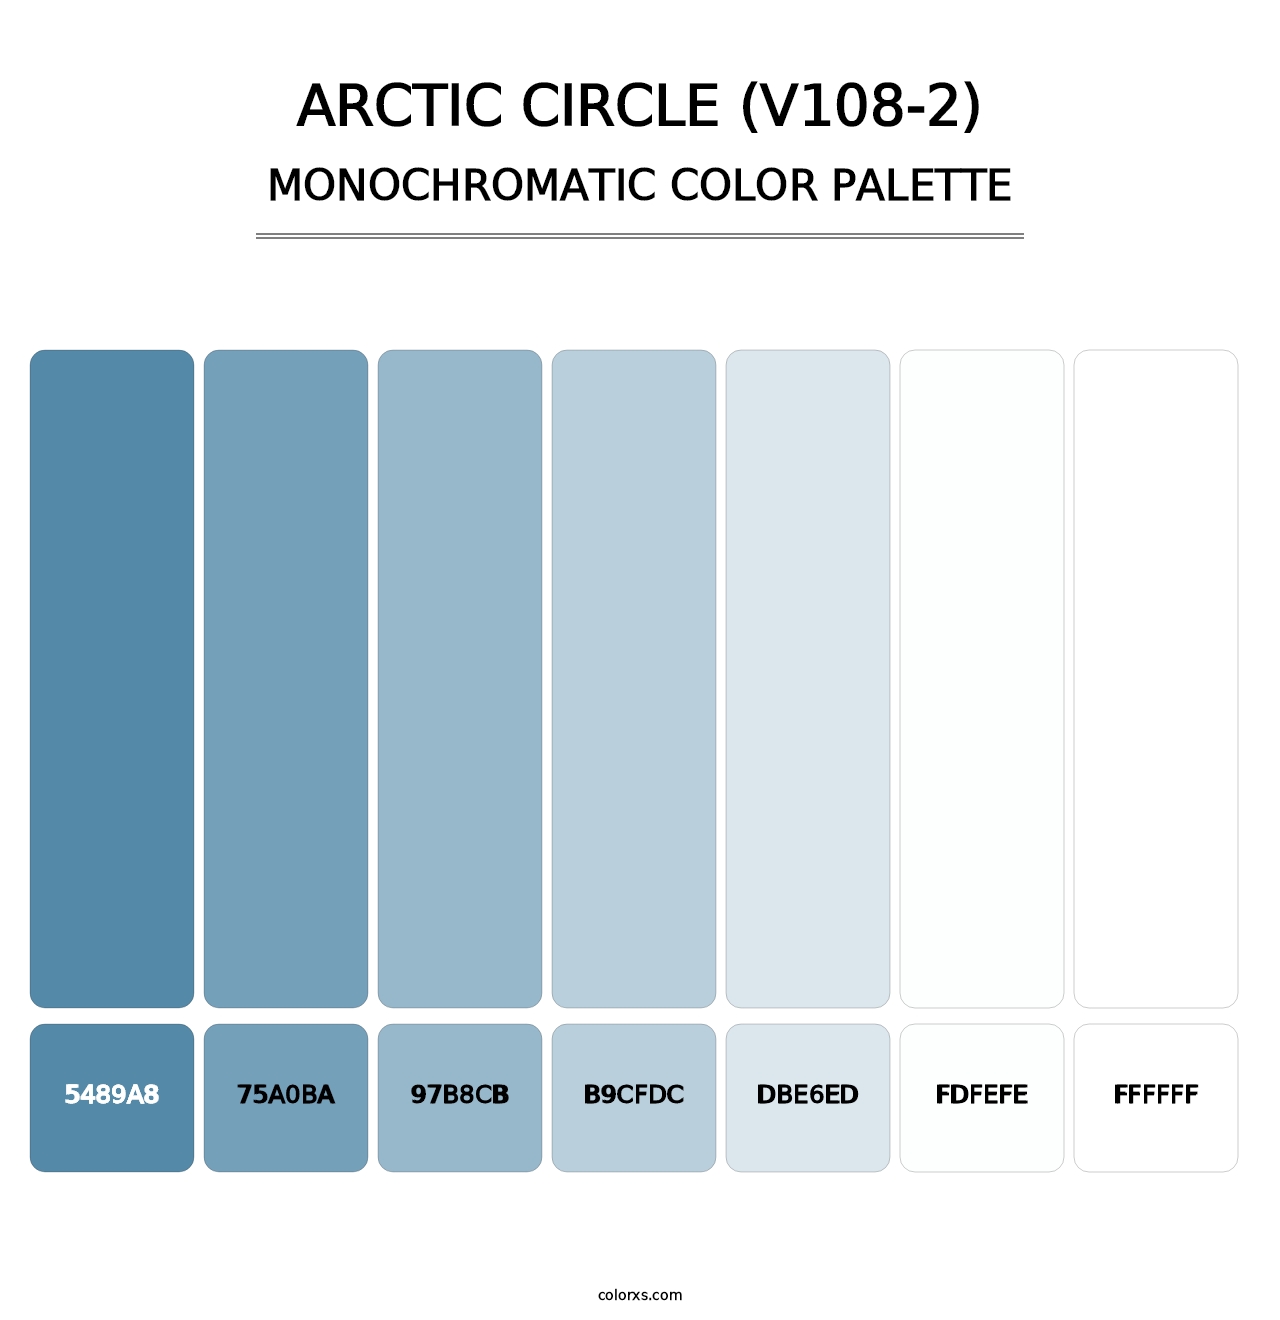 Arctic Circle (V108-2) - Monochromatic Color Palette